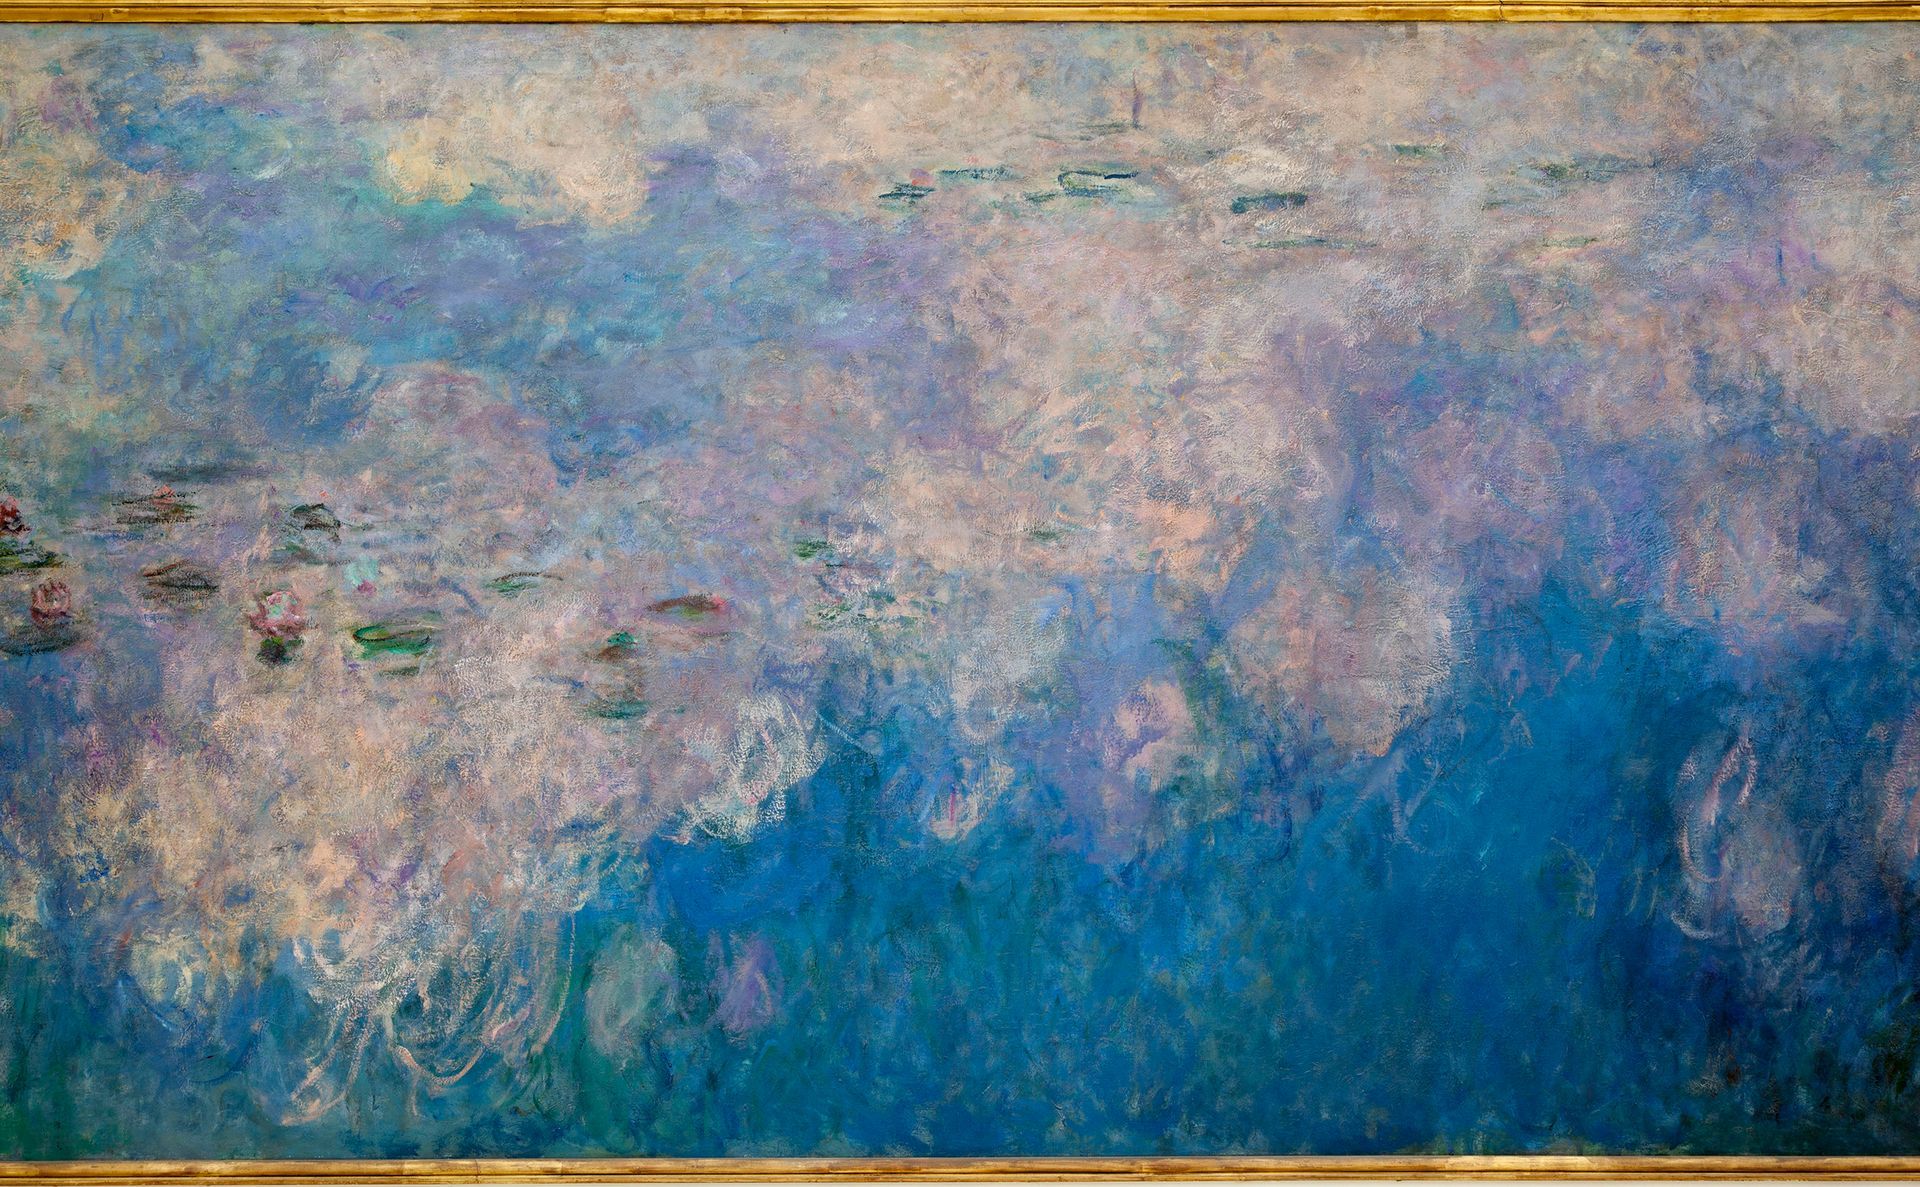  Claude Monet Les nuages [Clouds], c. 1914-26 Oil on canvas, 78 3/4 x 502 in. Musée de l’Orangerie, Paris. 